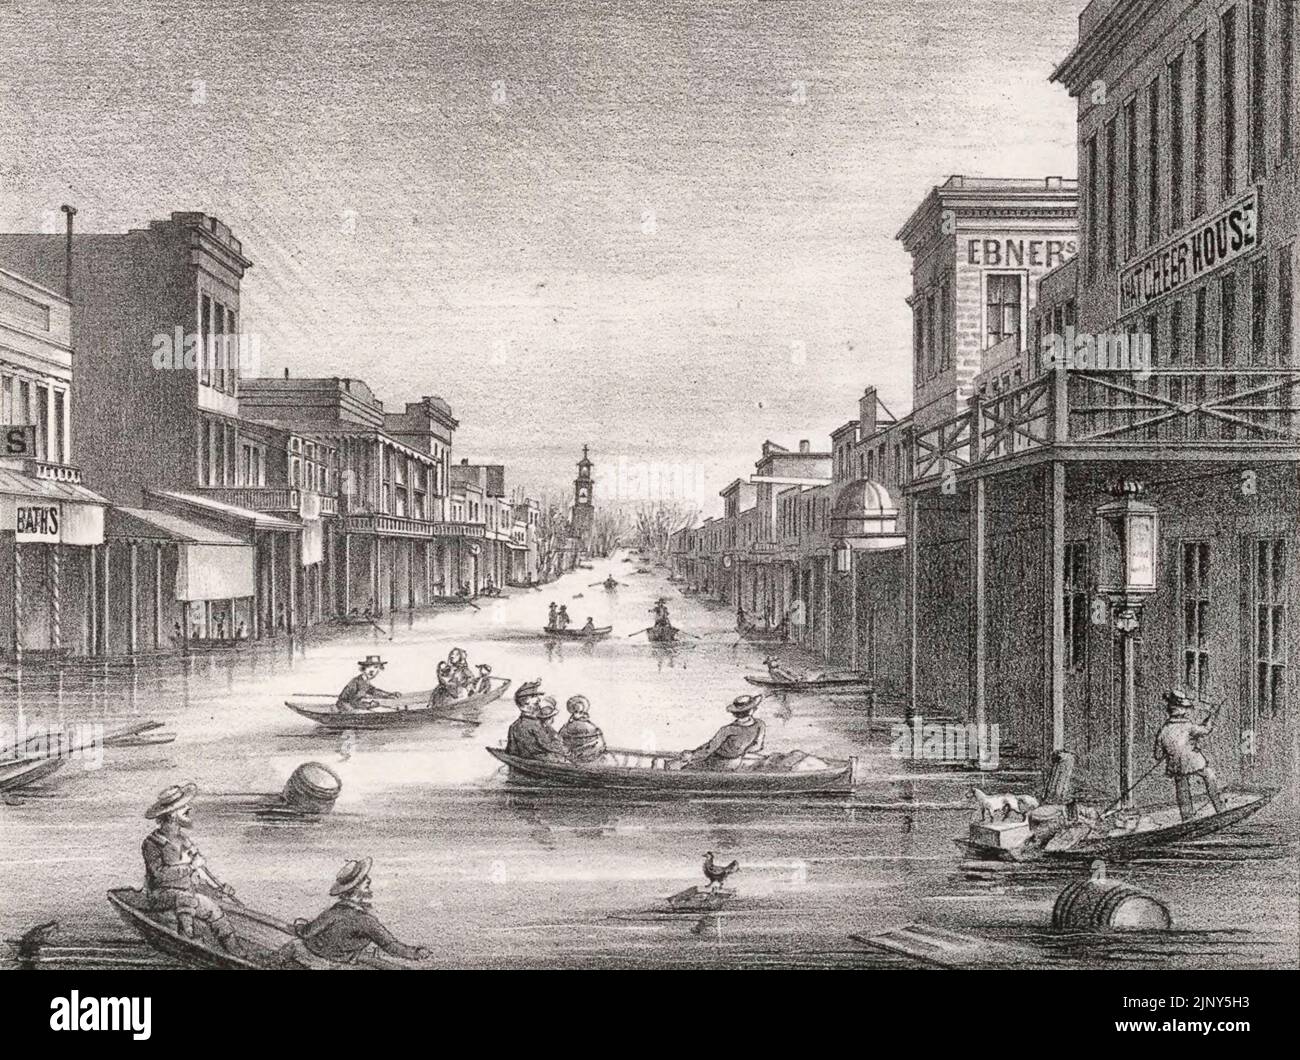 Lithographie der K Street in Sacramento, Kalifornien, während der großen Flut von 1862. Die Flut betraf die westlichen Vereinigten Staaten von Oregon über Kalifornien und Idaho bis New Mexico Stockfoto